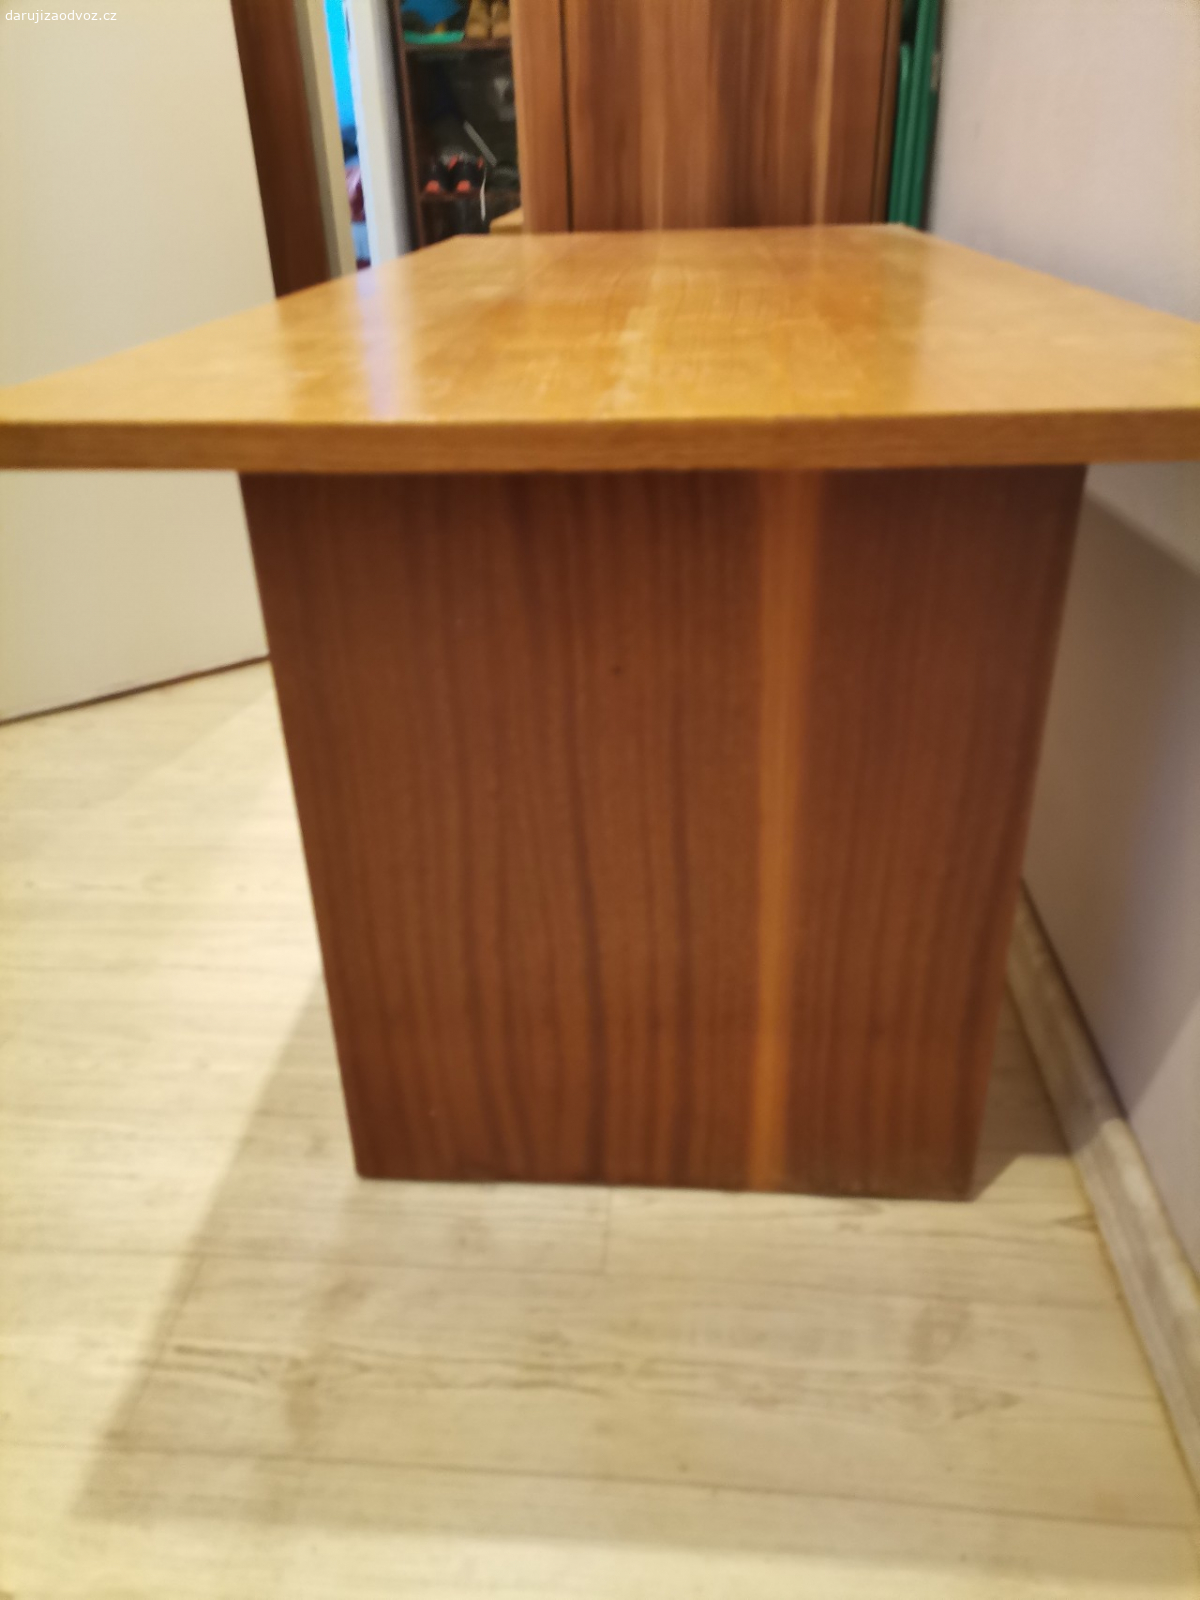 Konferenční stolek. za 1 kg kávy vyměním konferenční stolek (viz) foto
D -120 - Š - 55 - V - 53